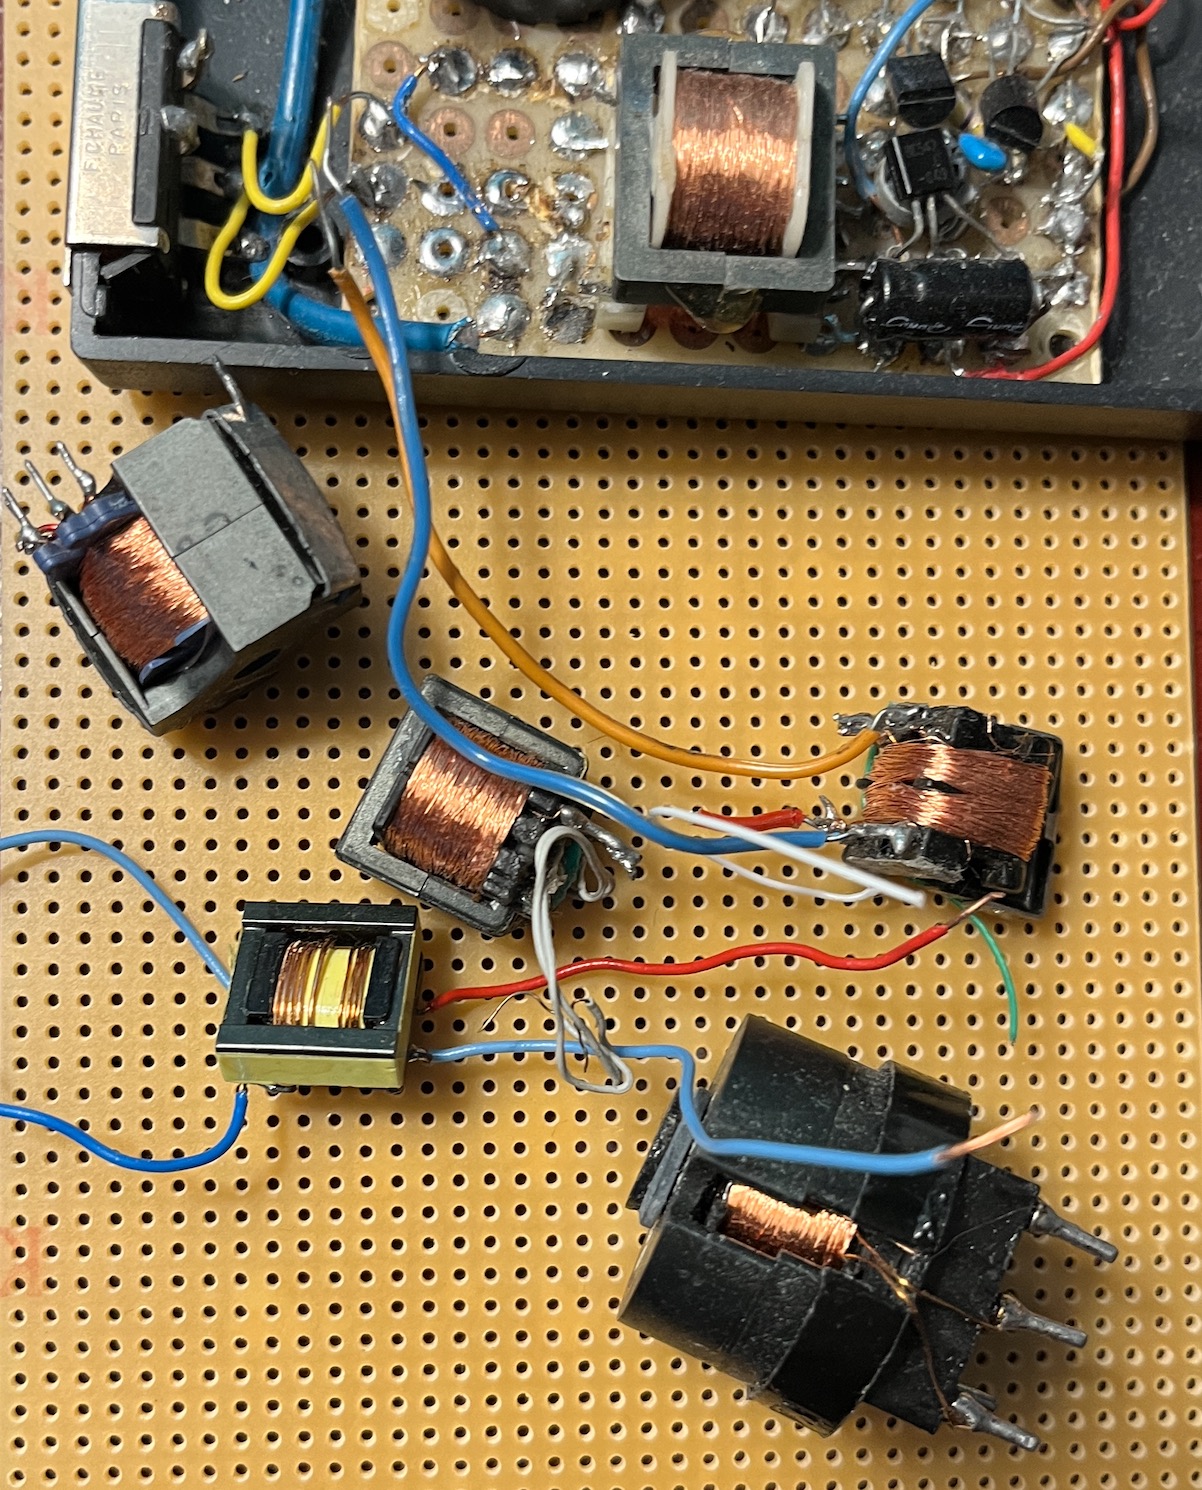 Un projet de compteur geiger à transistors - Page 3 Captu874